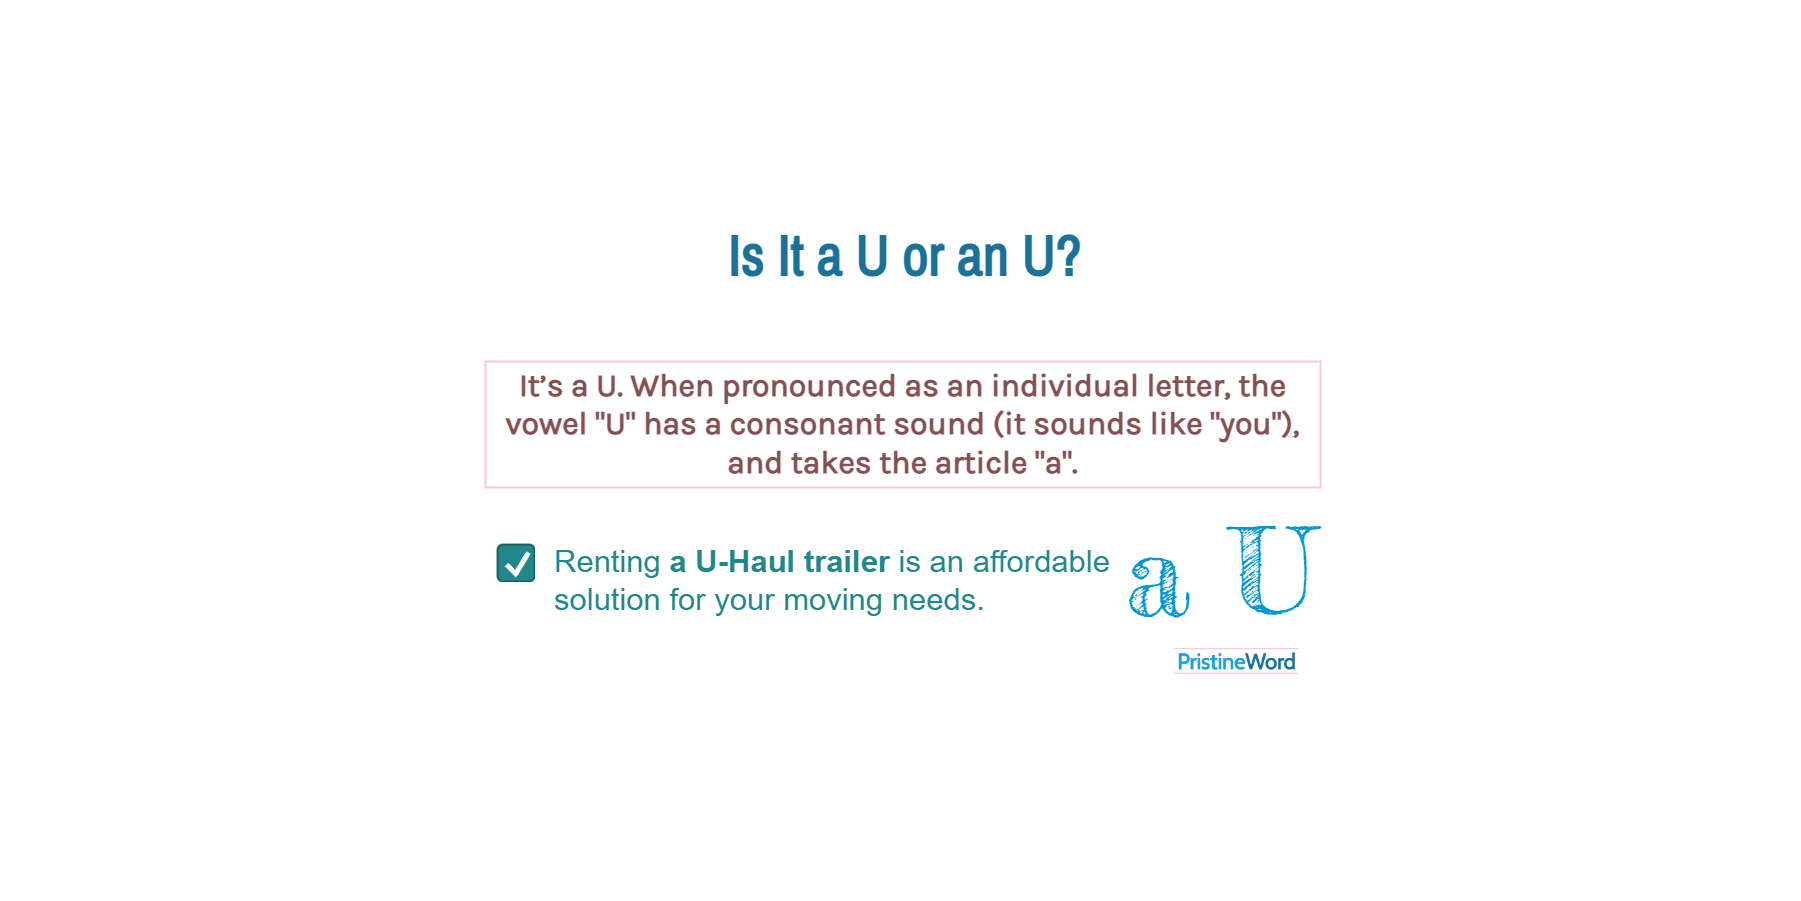 Is It a U or an U?